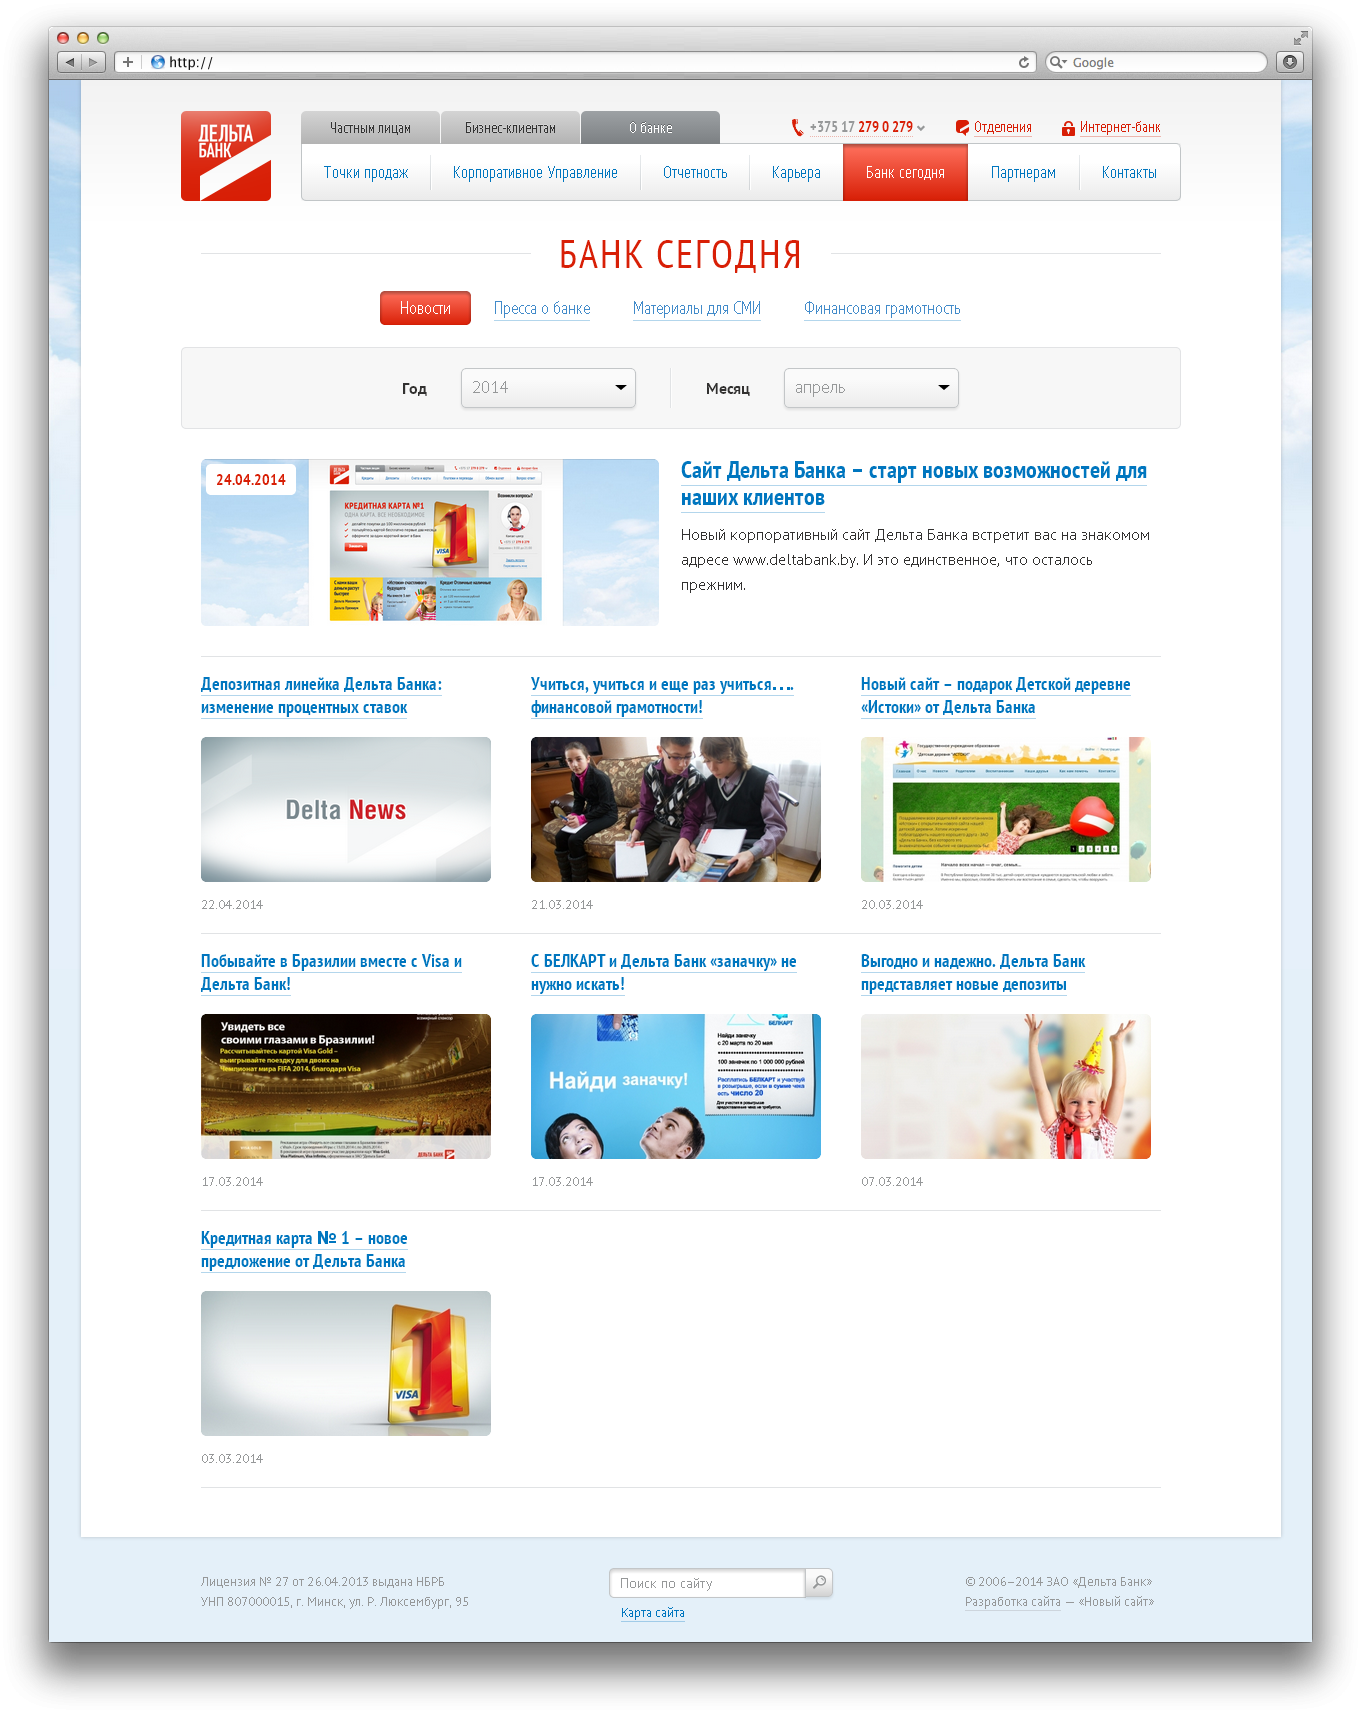 корпоративный сайт зао "дельта банк" - банковские услуги - deltabank.by